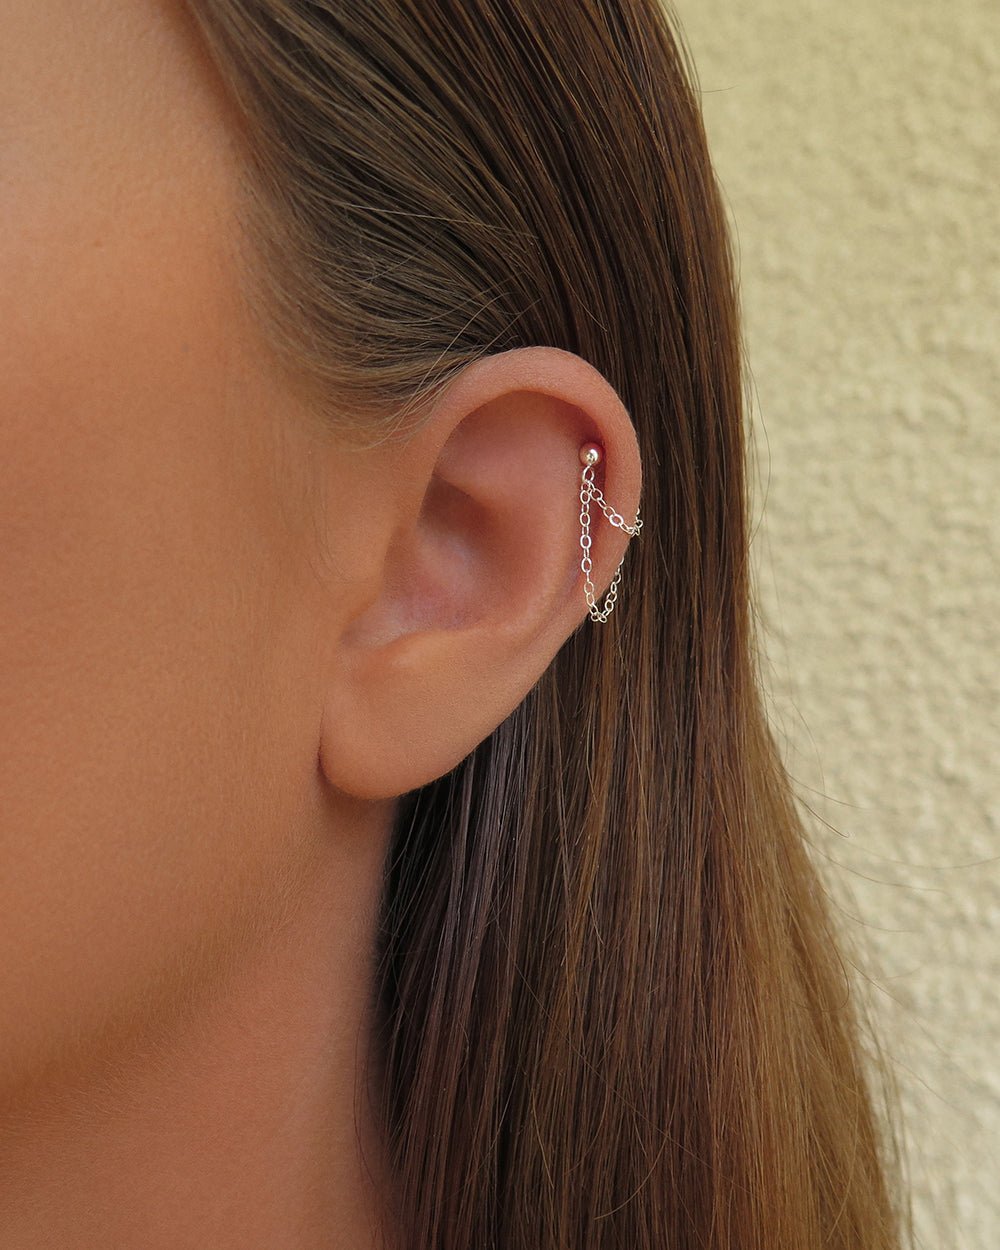 DOUBLE CHAIN STUD EARRINGS - Sterling Silver - The Littl - Sterling Silver - 1x SINGLE Double Chain Stud Earring Earrings